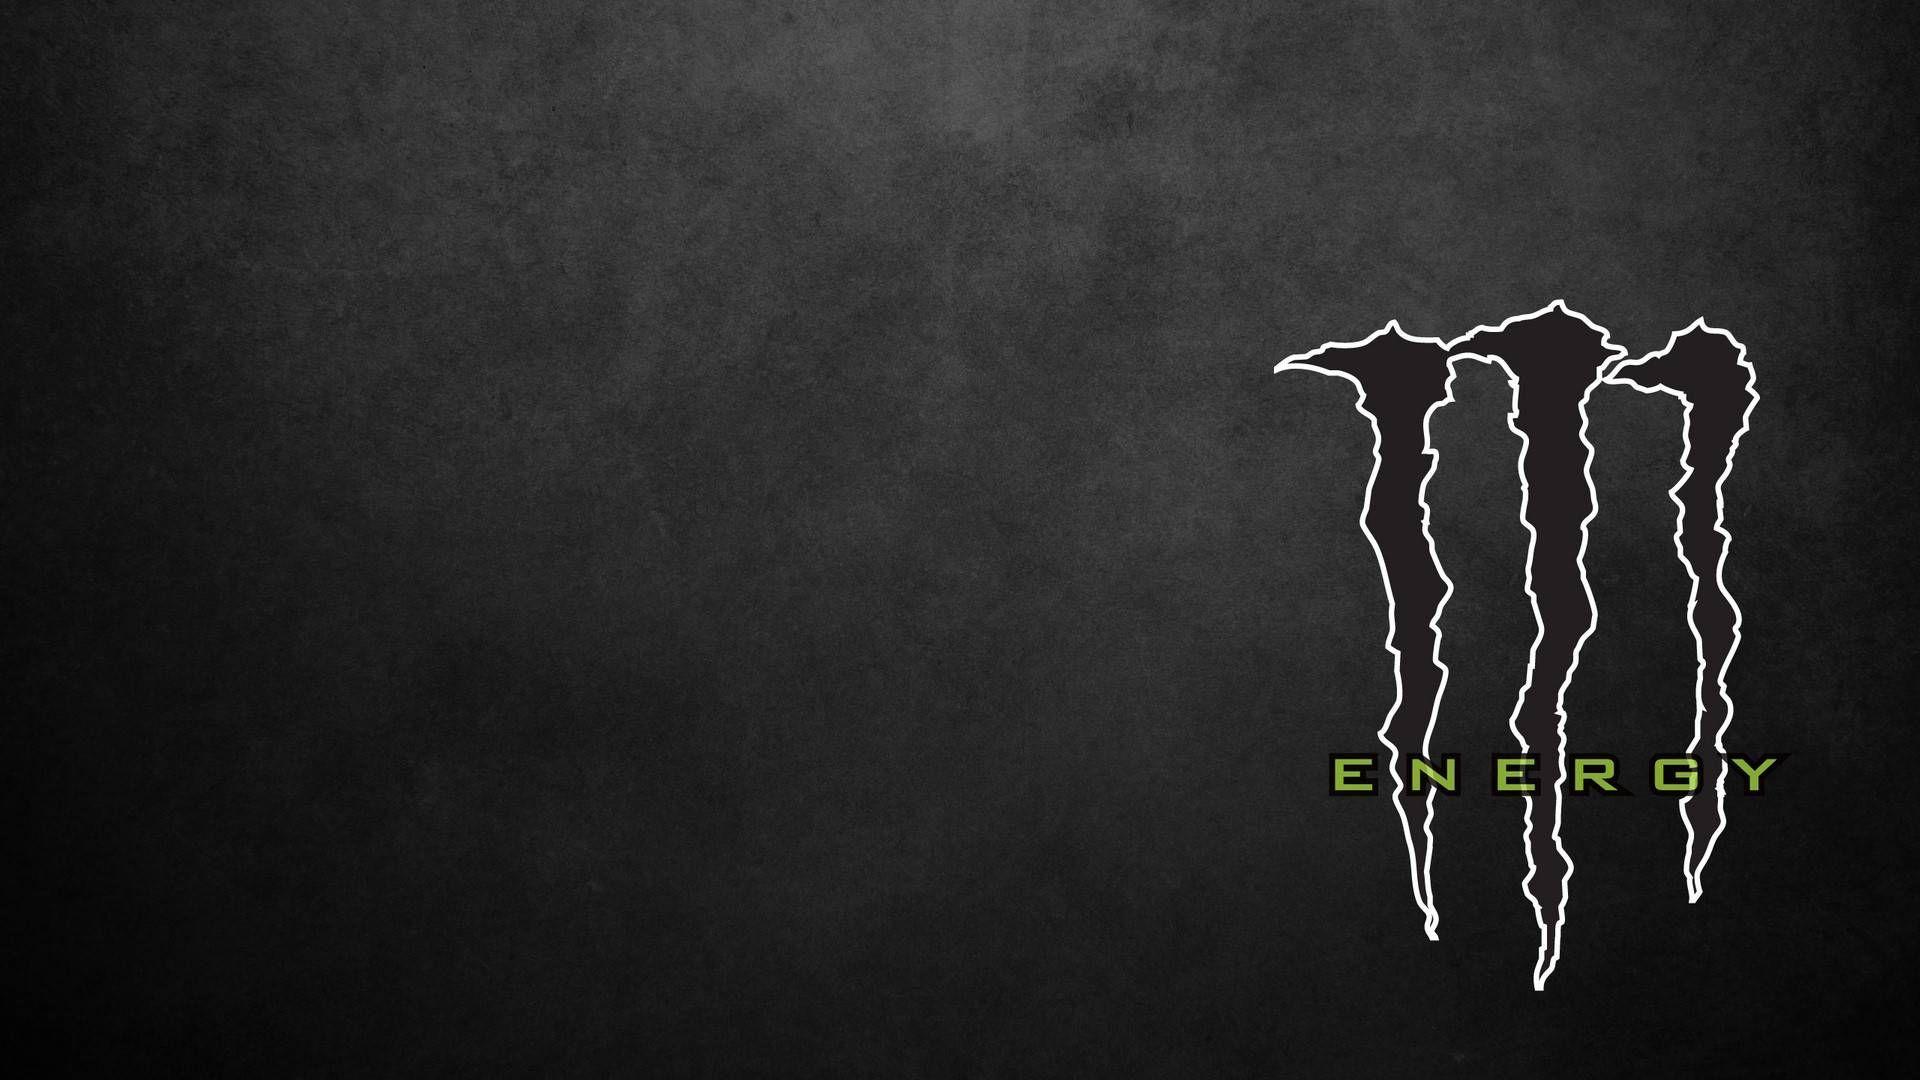 White Monster Energy Logo - Monster Energy Logo Black and White | df | Wallpaper, Monster energy ...